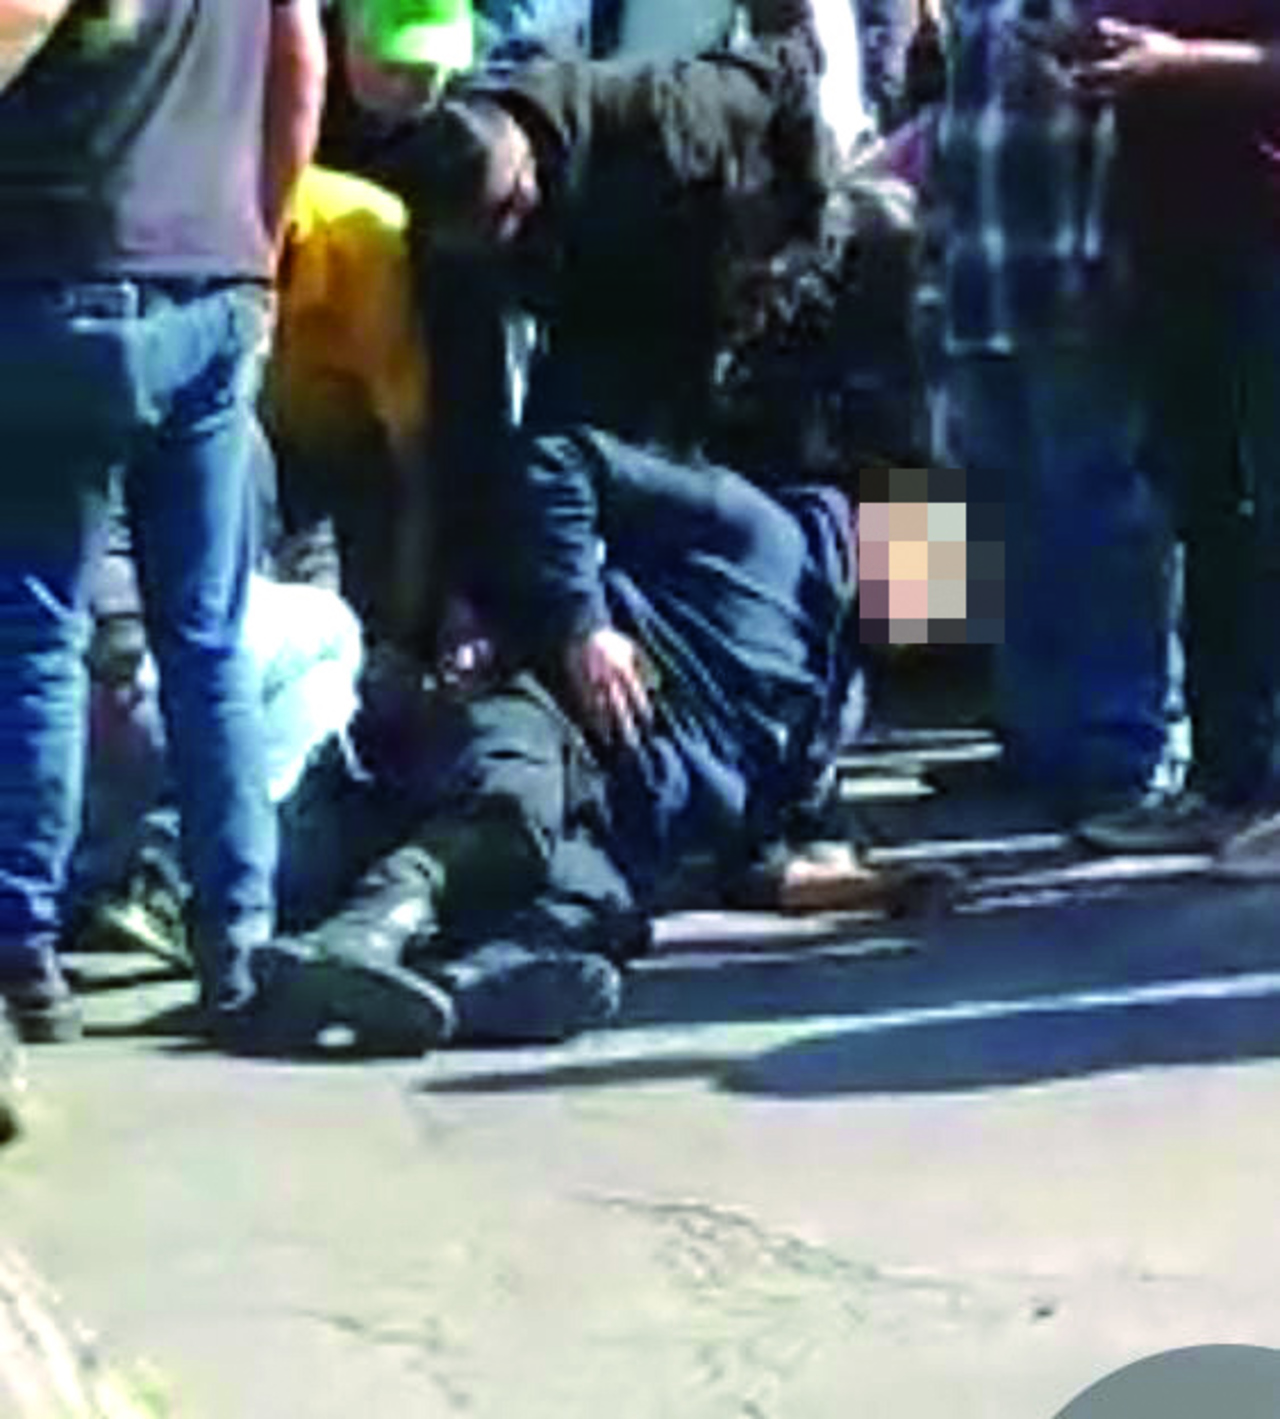 El director operativo de la Policía Municipal, Héctor Alba, aseguró que los policías heridos traen chaleco balístico. En la imagen no se nota el abultamiento bajo la ropa de ningún chaleco.